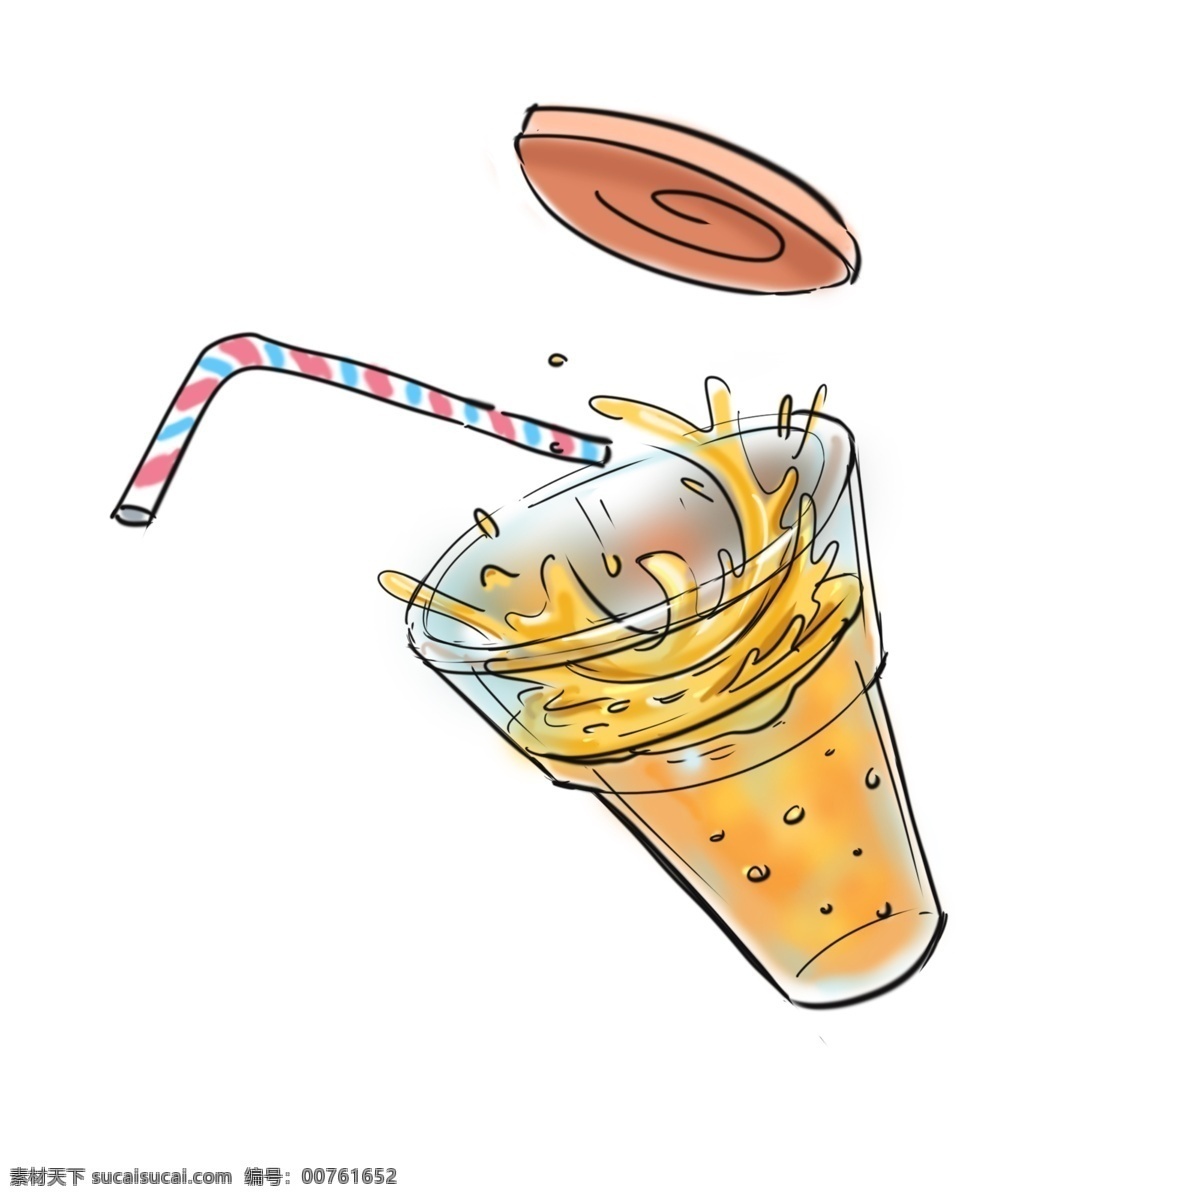 果汁 主题 喷溅 卡通 手绘 饮料 吸管 液体 橙汁 泡泡 玻璃杯 杯盖 解渴 肥宅水 卡通风格 手绘插画